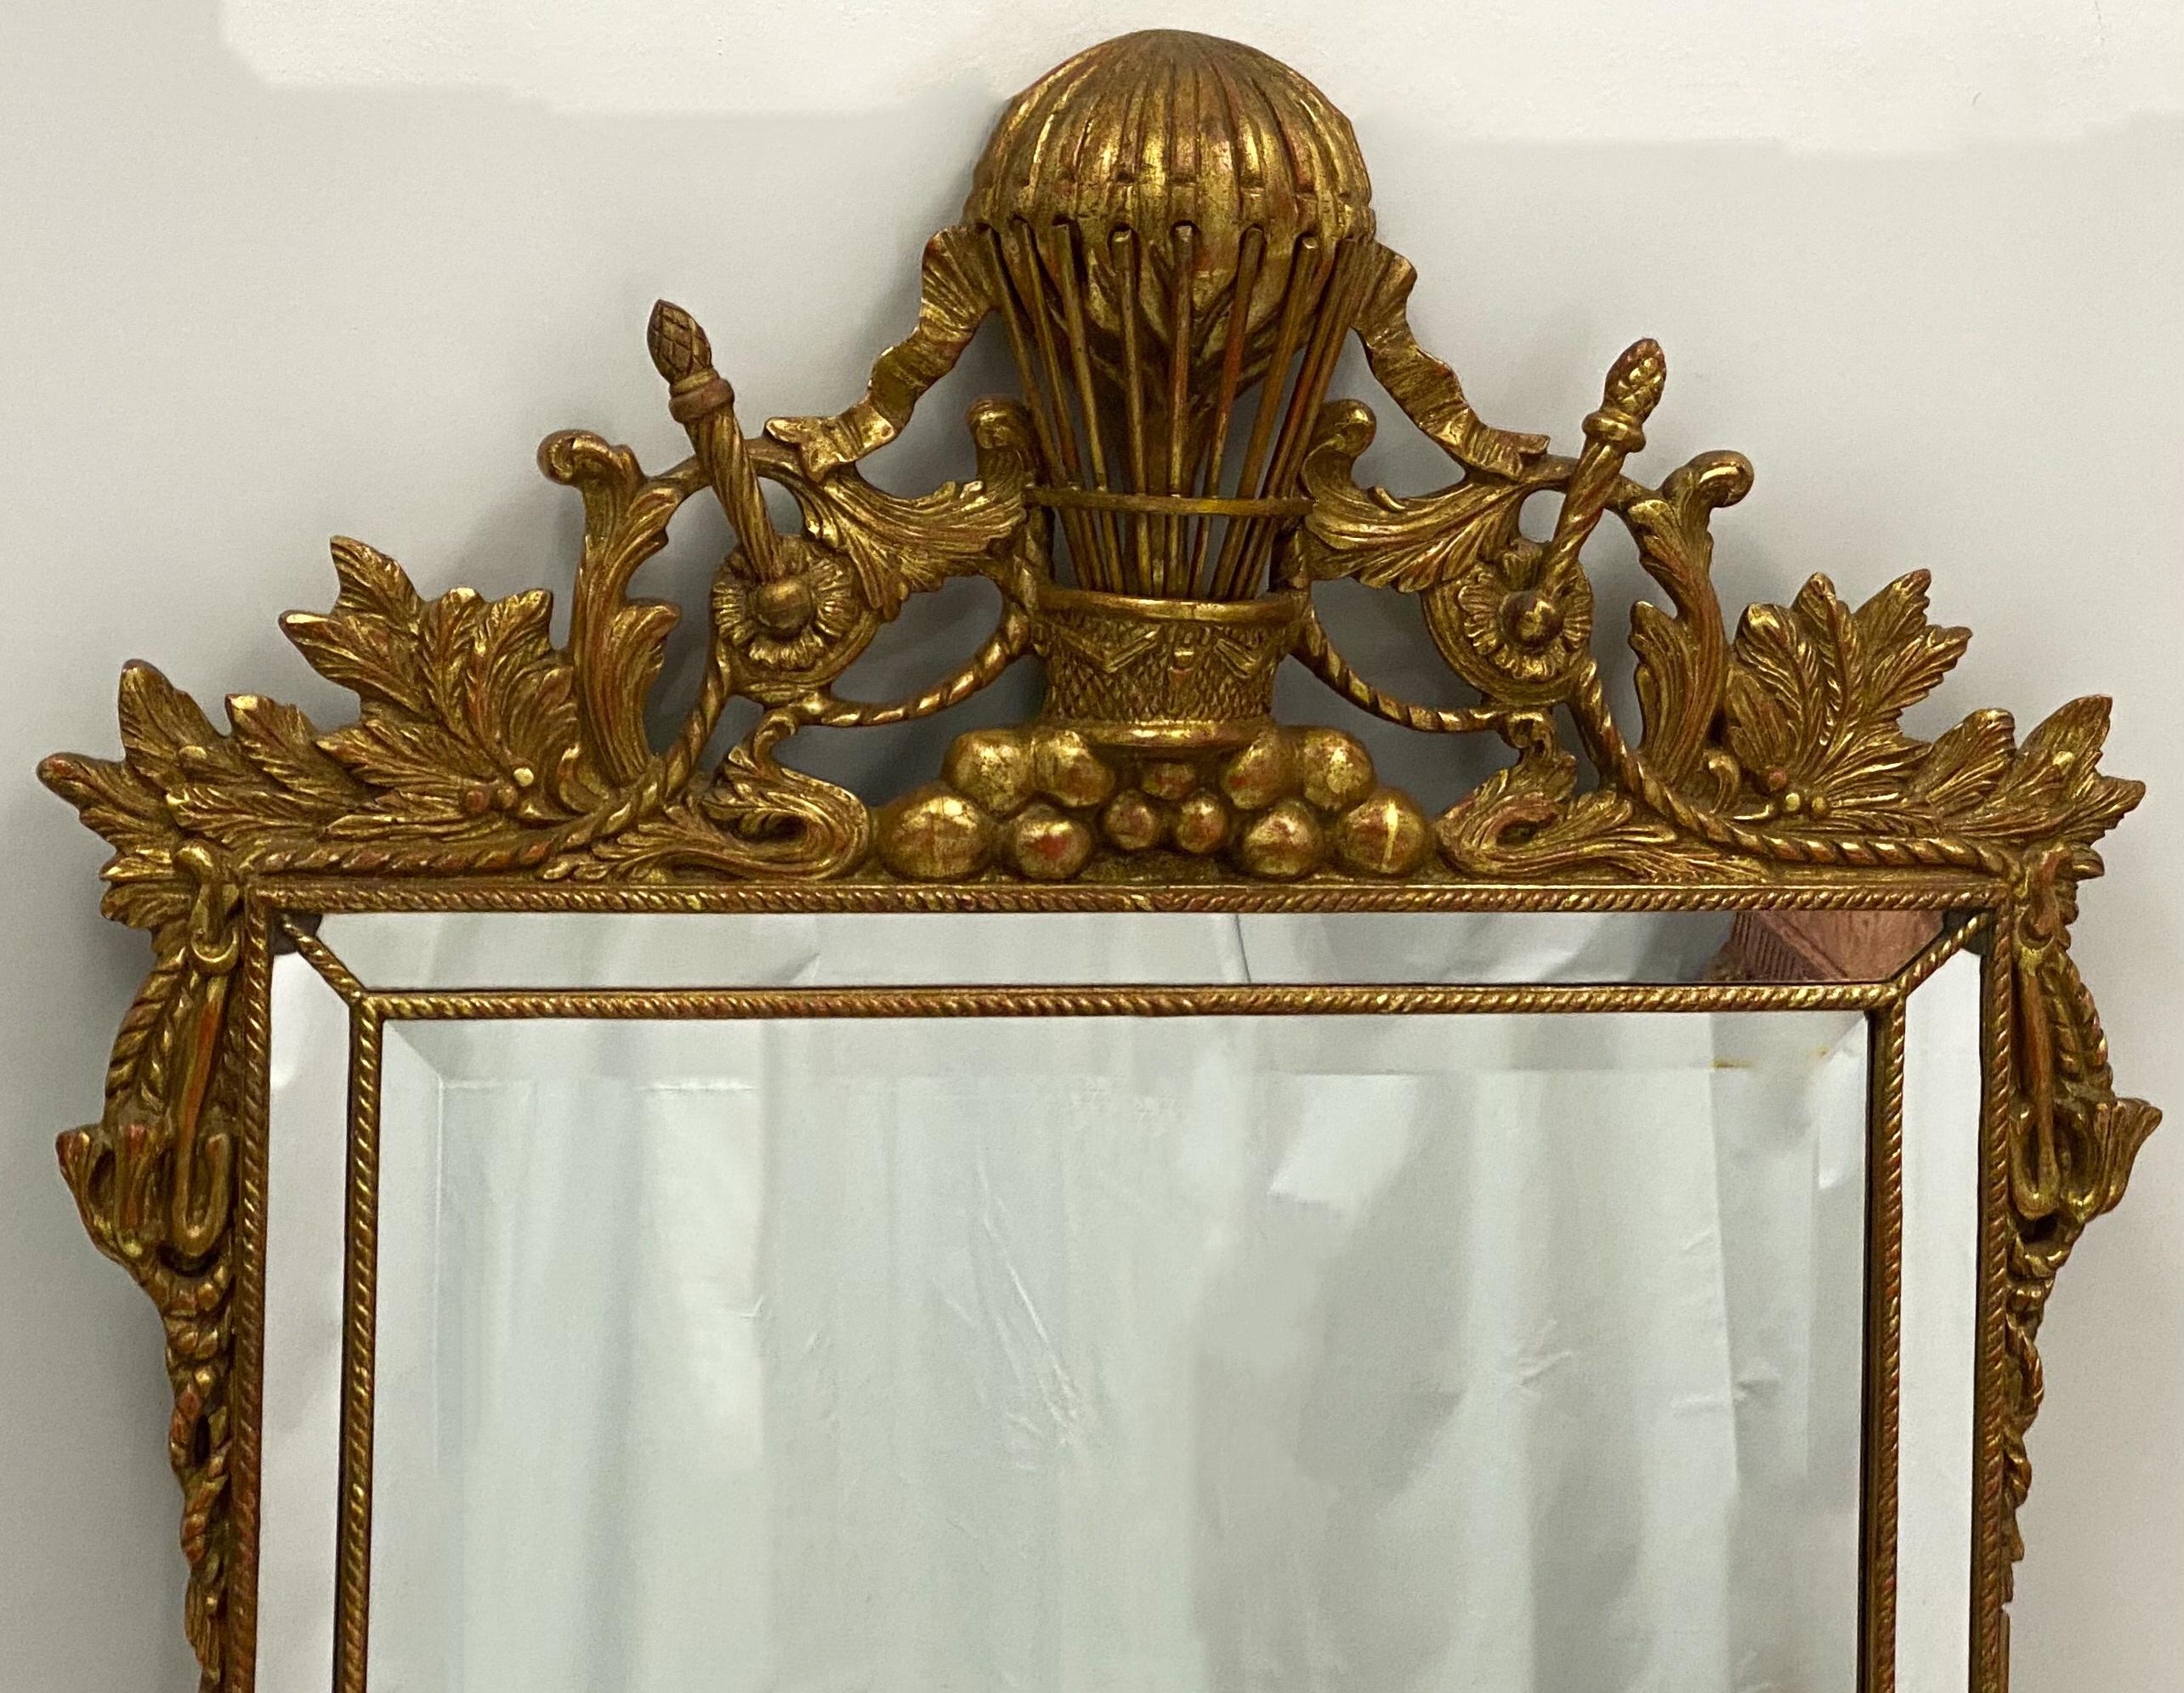 Il s'agit d'un miroir en bois doré sculpté à thème napoléonien du milieu du siècle dernier. La sculpture est en très bon état, tout comme le miroir, qui est biseauté. Il n'est pas marqué.